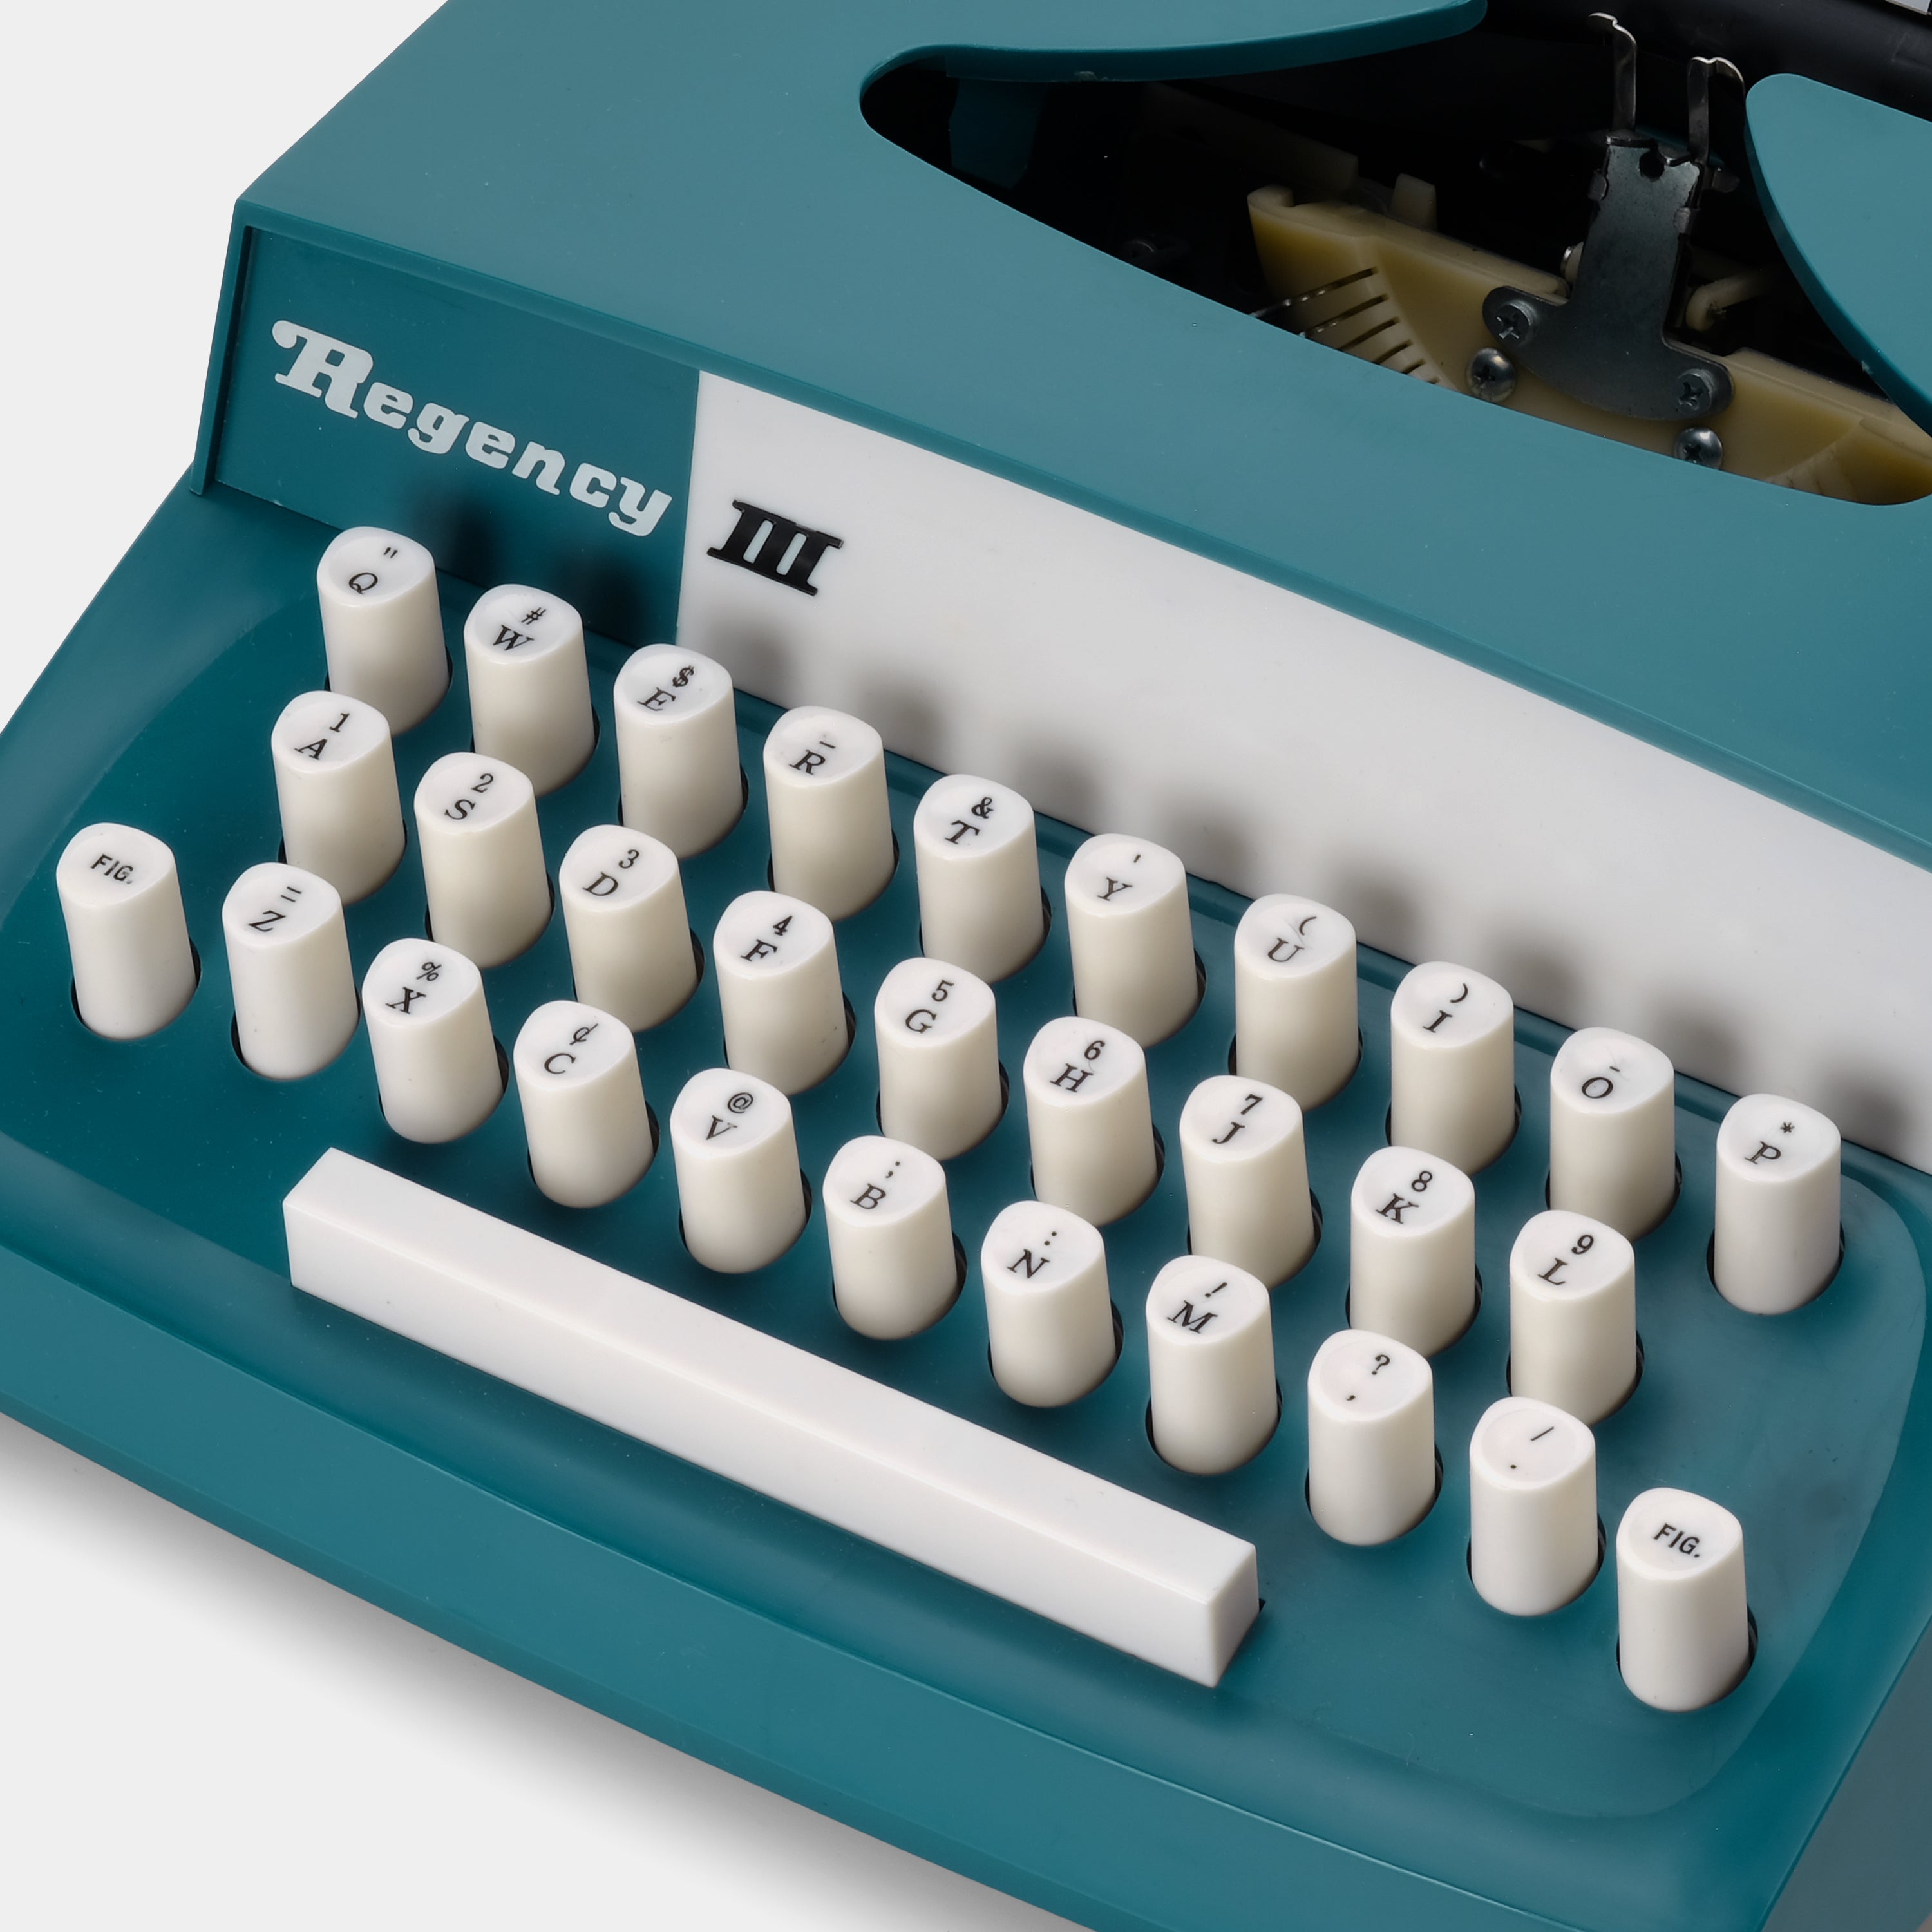 Regency III Teal Manual Typewriter